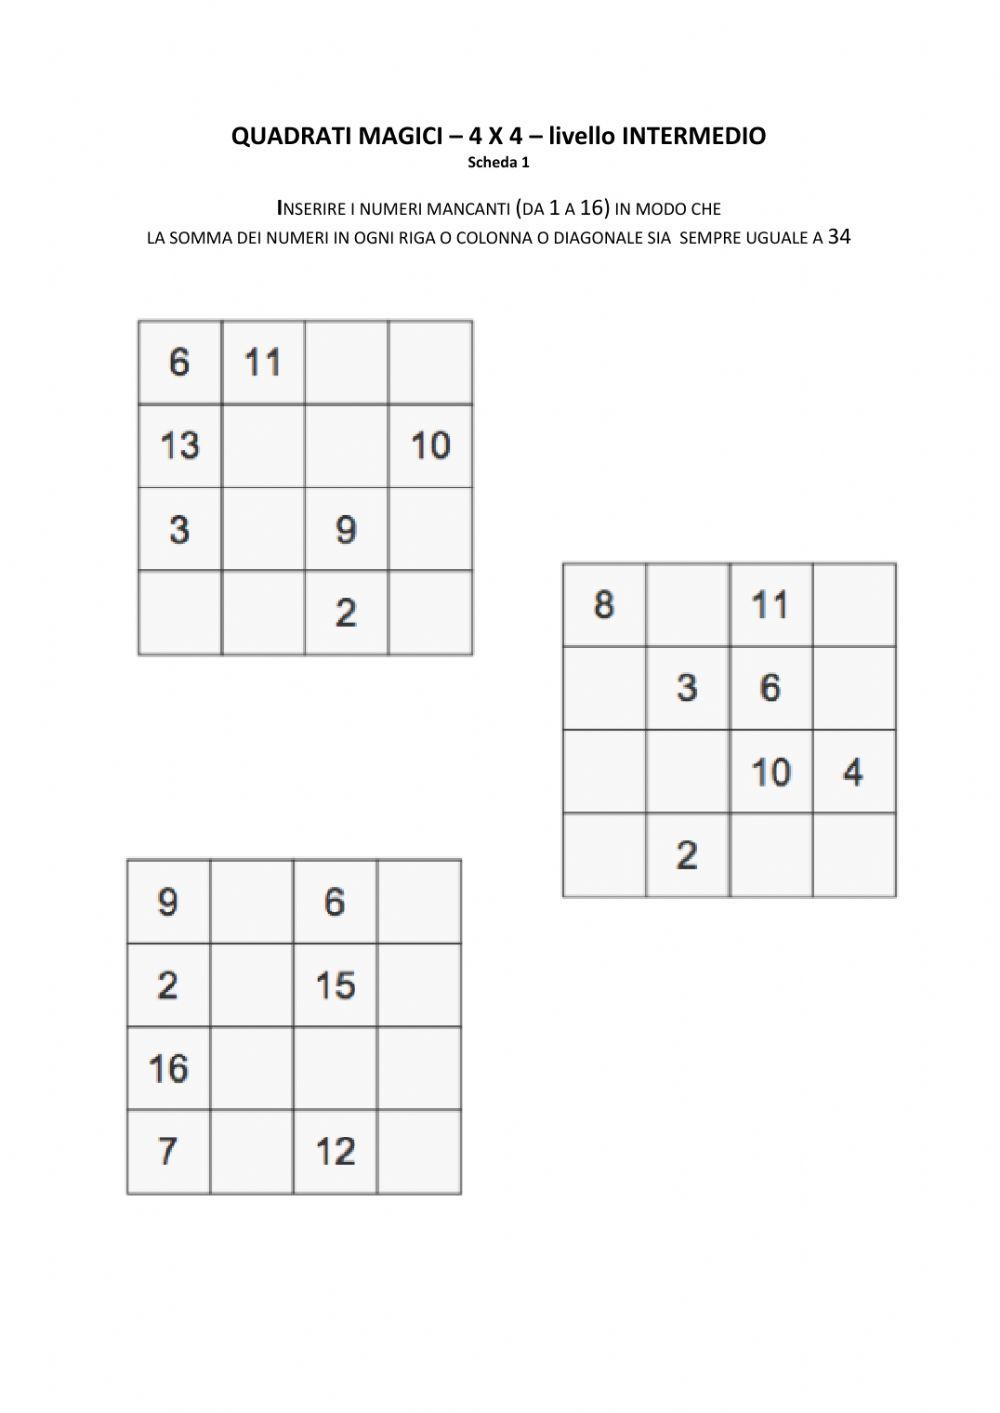 Quadrati magici - 4x4 - livello INTERMEDIO - n.1